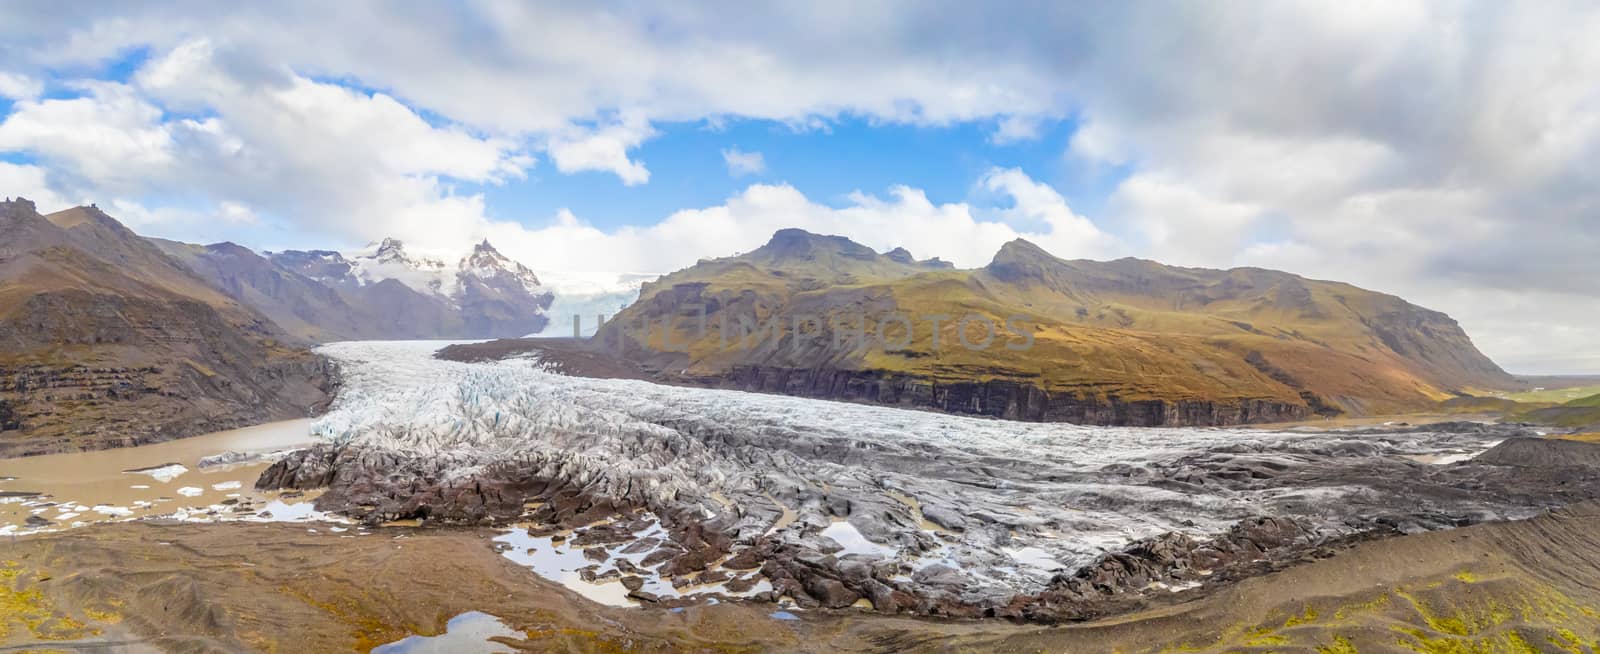 Vatnajoekull glacier in Iceland aerial panorama of full glacier by MXW_Stock